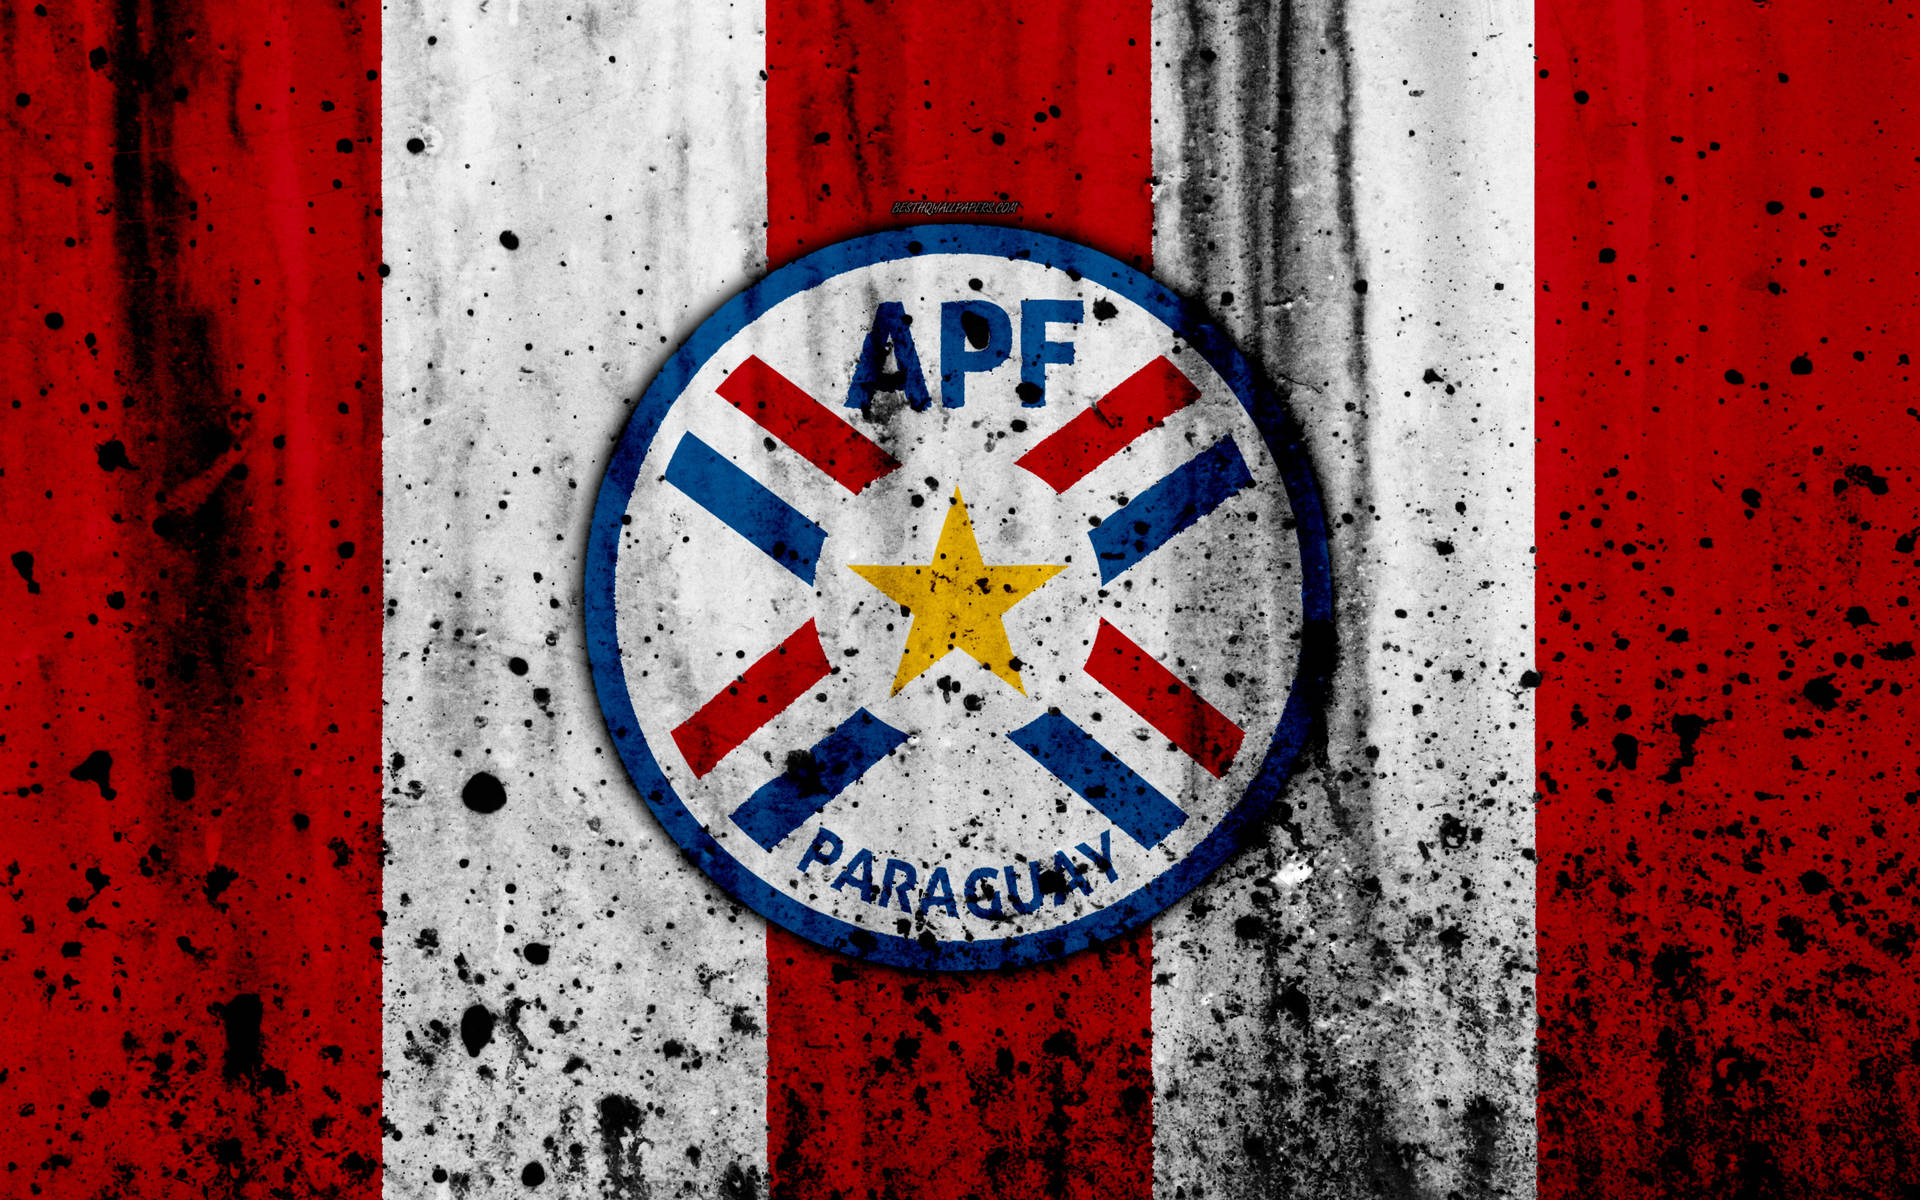 Paraguayapf Emblem Wallpaper